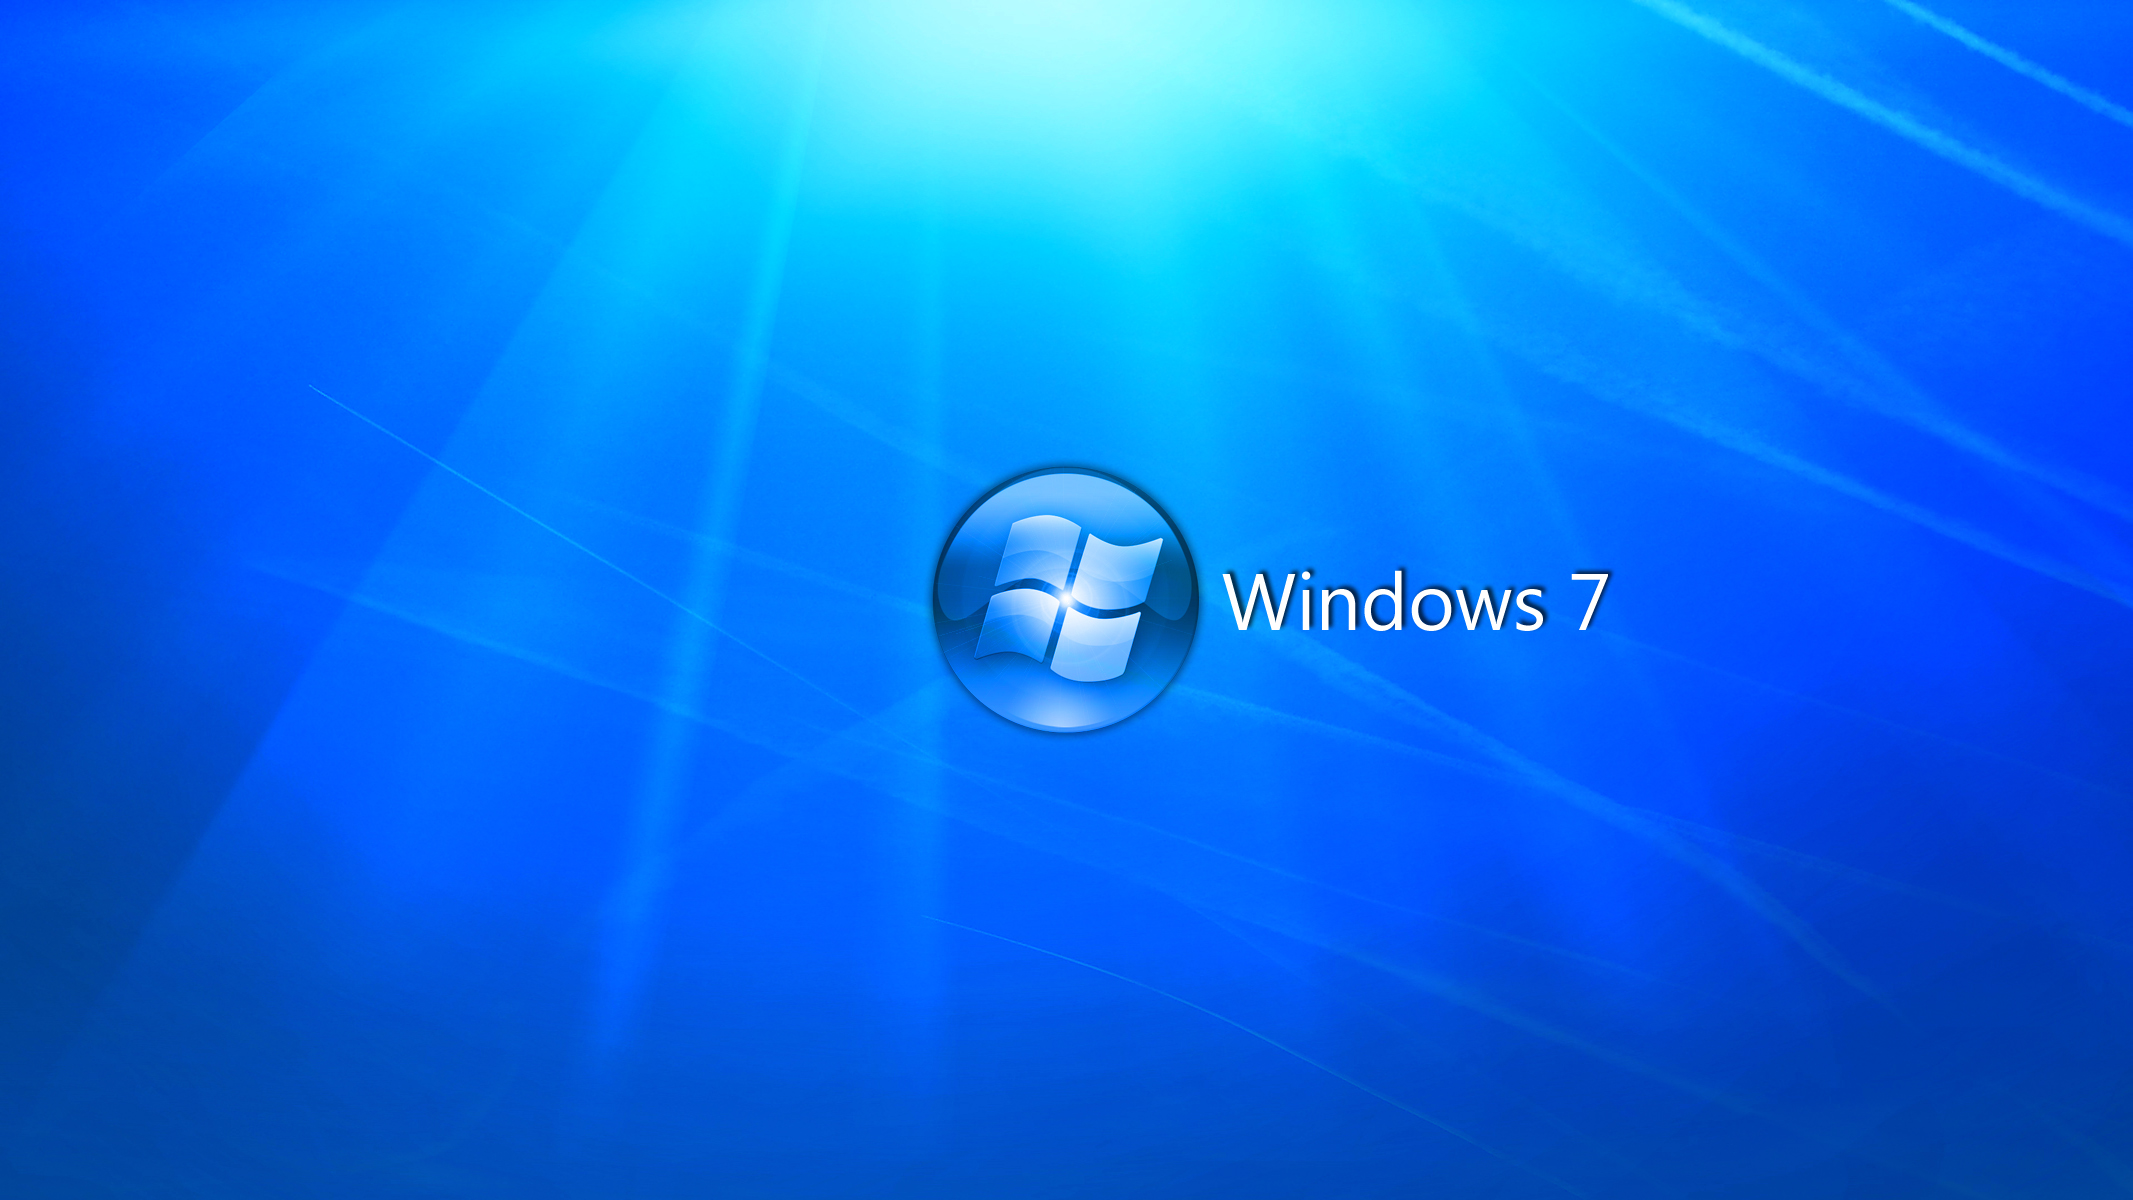 Desktop Backgrounds For Windows 7 HD Wallpapers Desktop Wallpapers